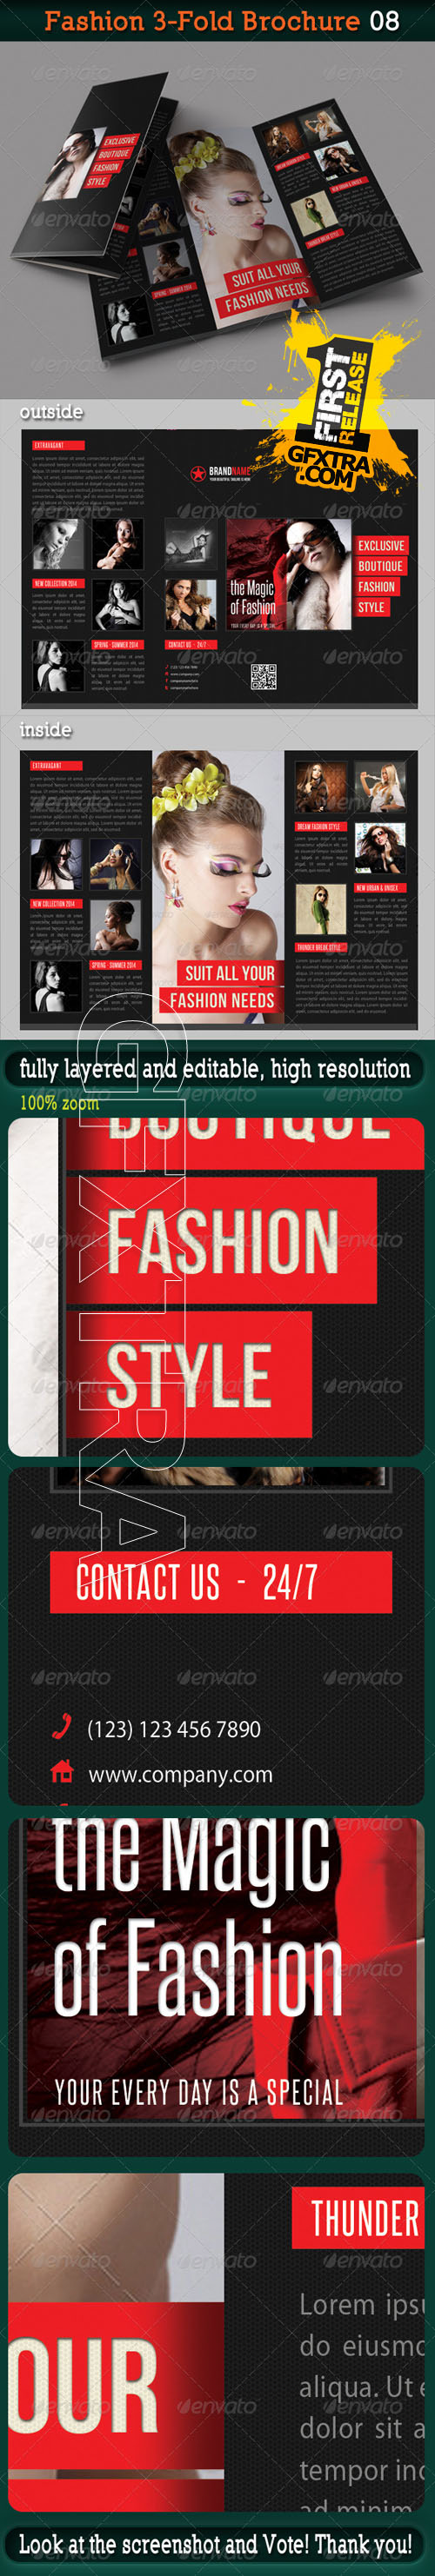 GraphicRiver - Fashion 3-Fold Brochure 08